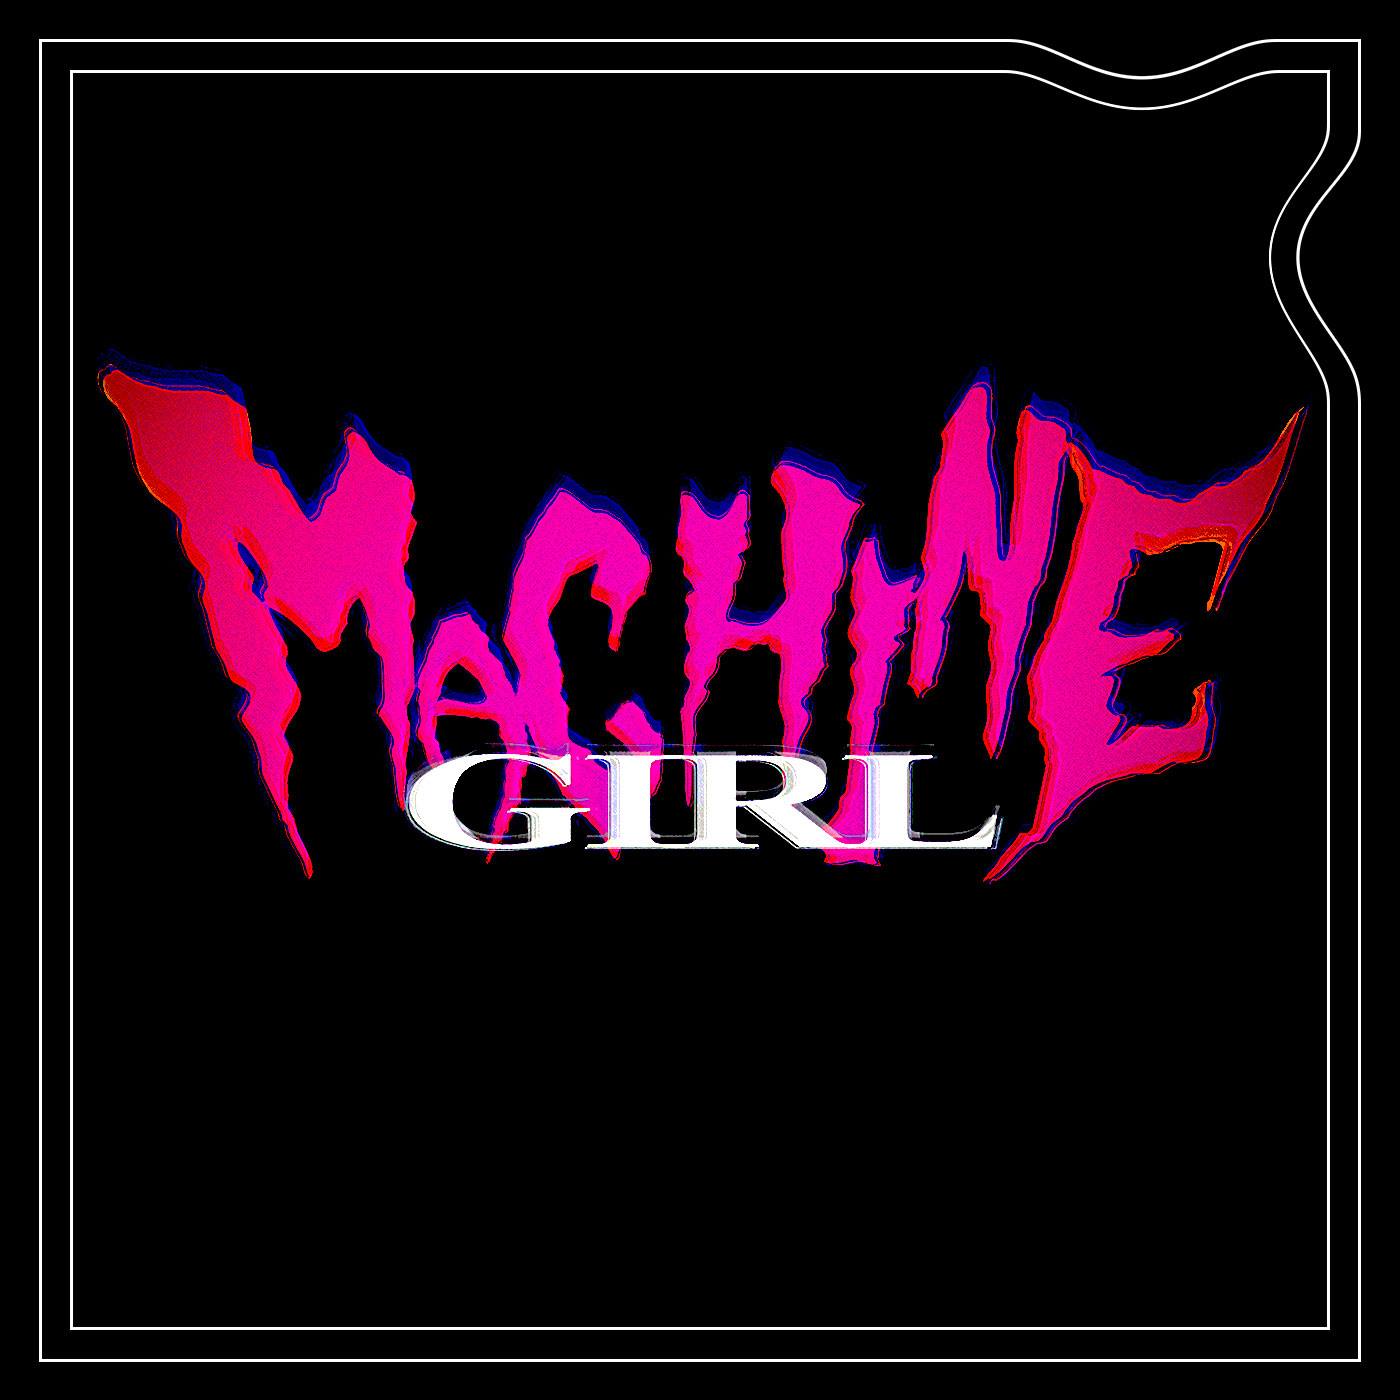 Machine Girl The Masquerade